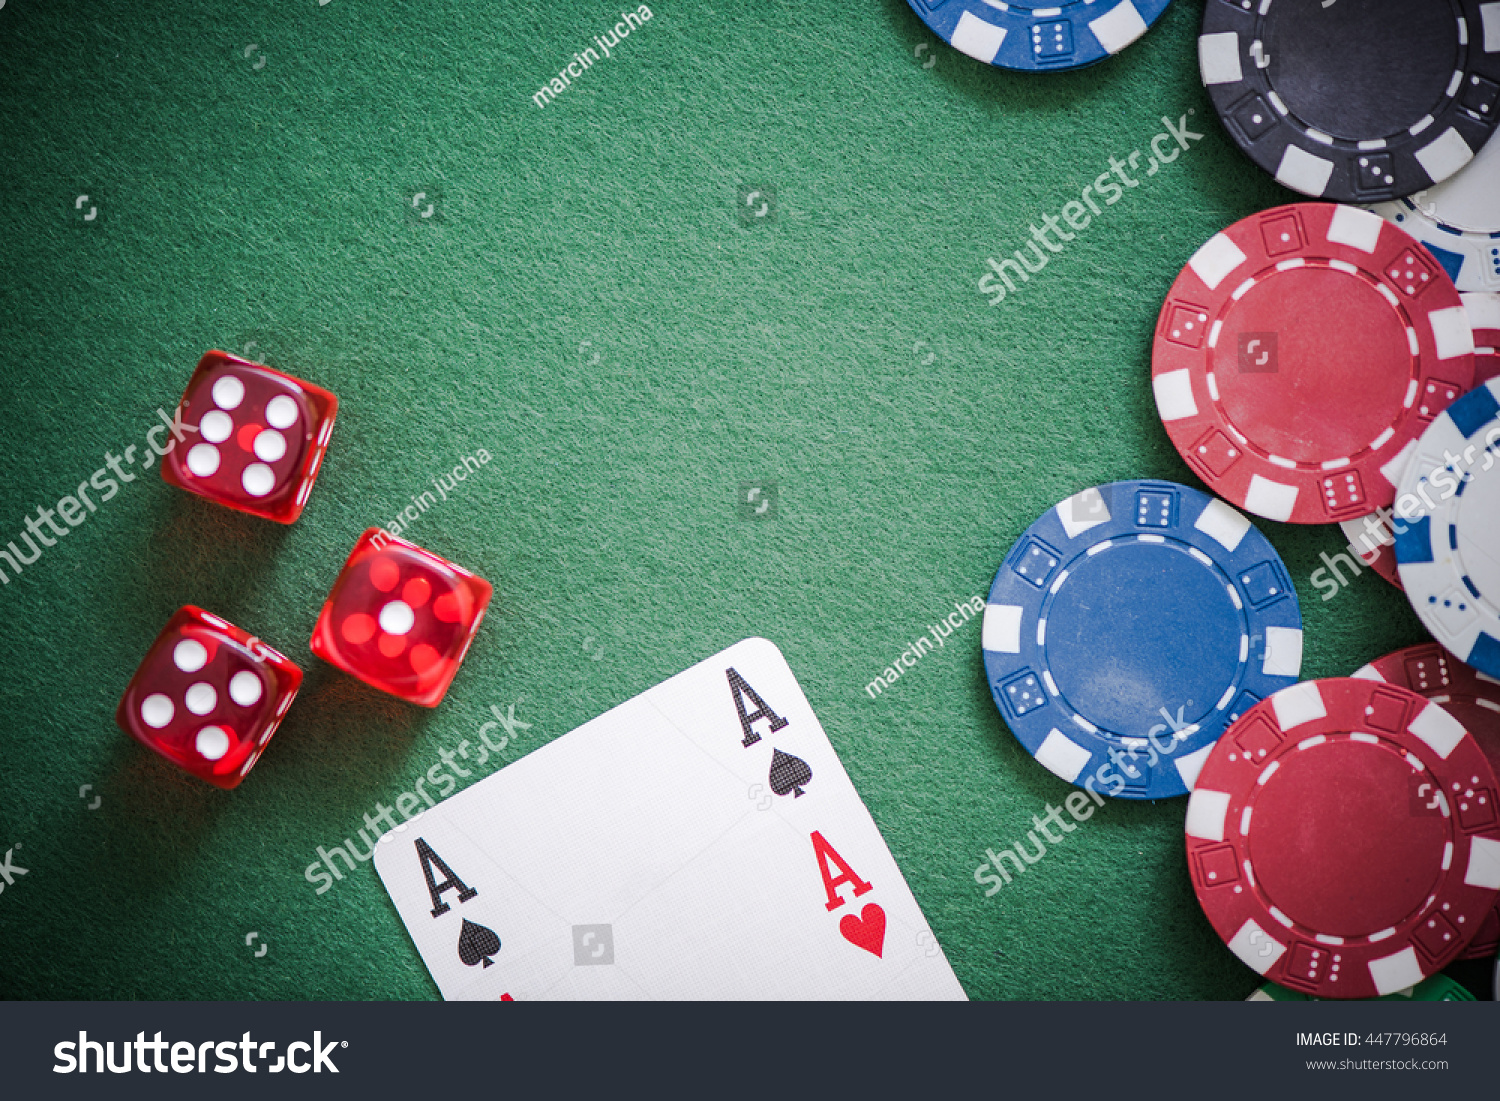 Фишки поинт. Фишки для покера. Игральные фишки для покера. Покерные фишки на столе. Стол для покера.